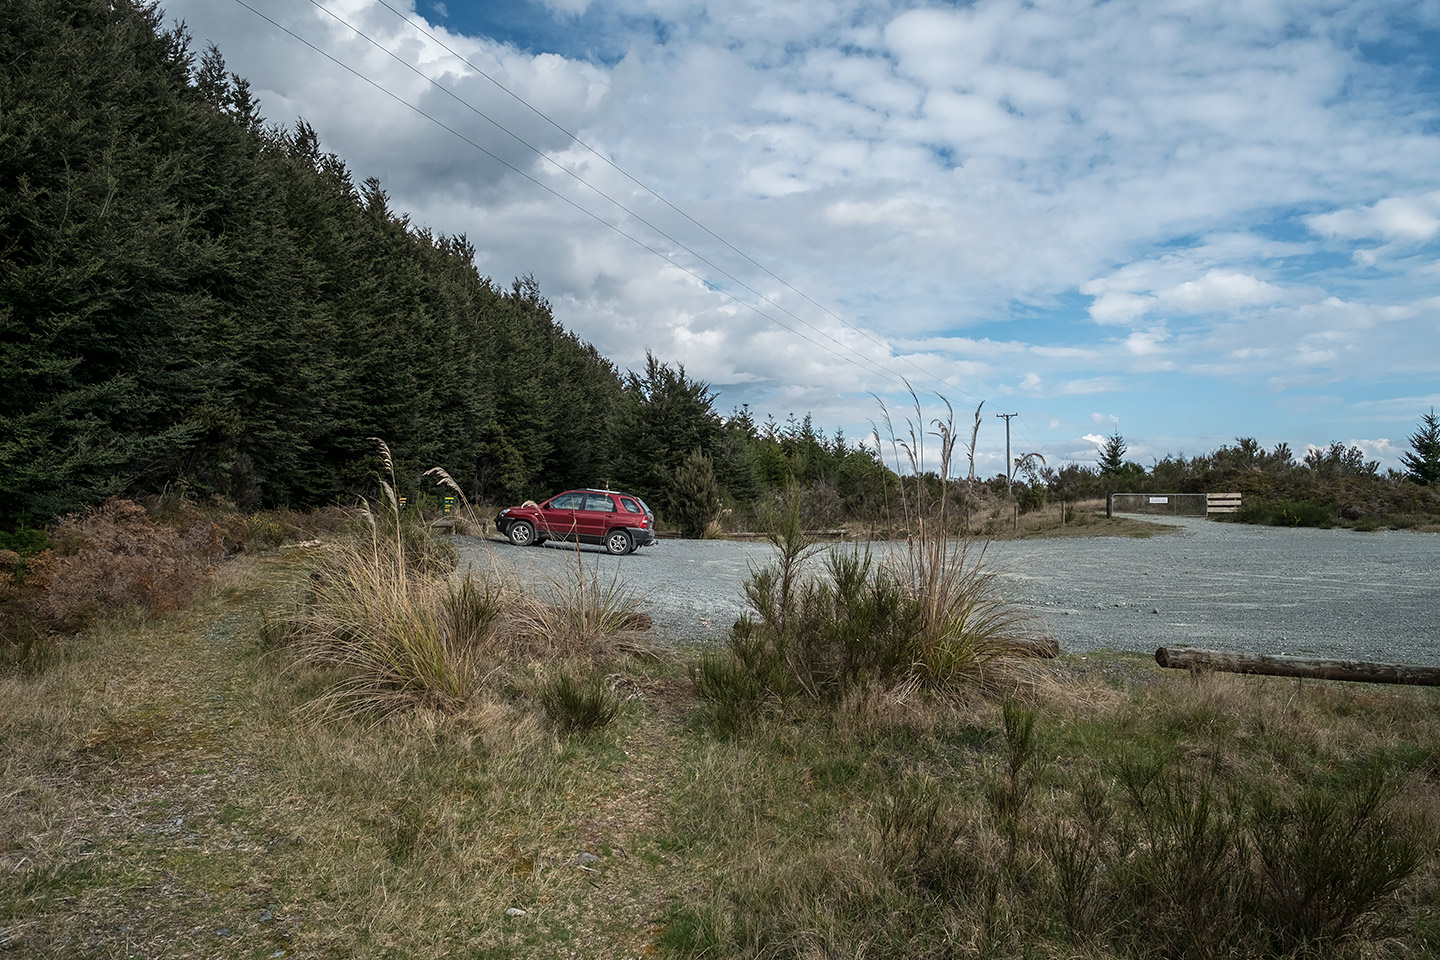 Lake Mistletoe, Fiordland National Park, New Zealand